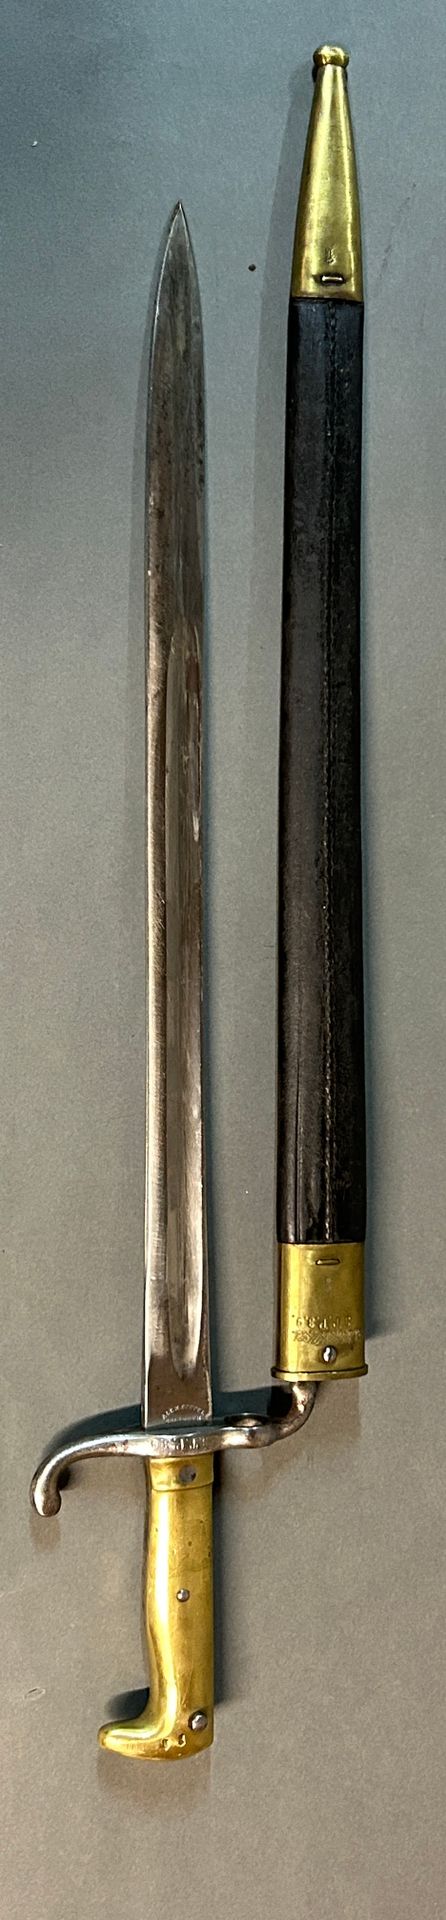 Null Bajonett für Mauser-Gewehr 1871.

Griff aus gegossenem Messing, Regimentsga&hellip;